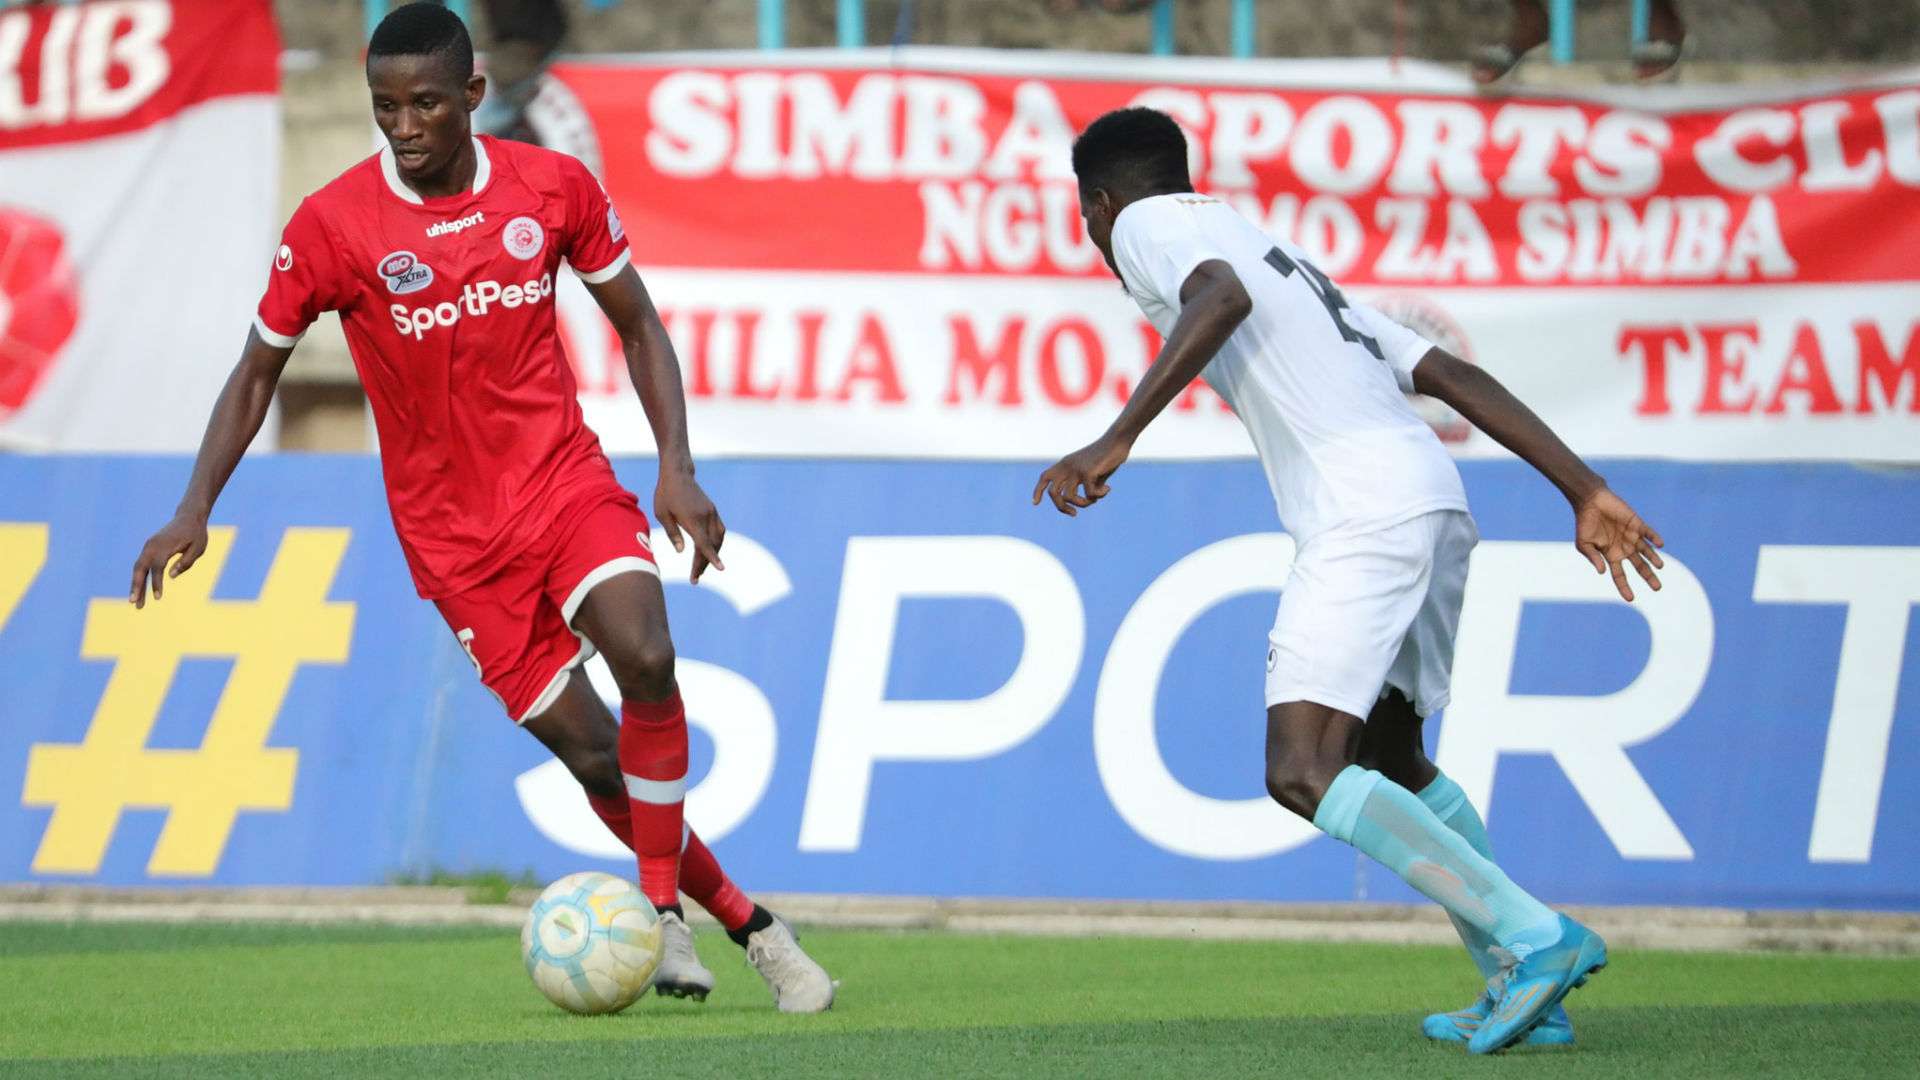 Chris mugalu of Simba SC vs Mwadui FC.